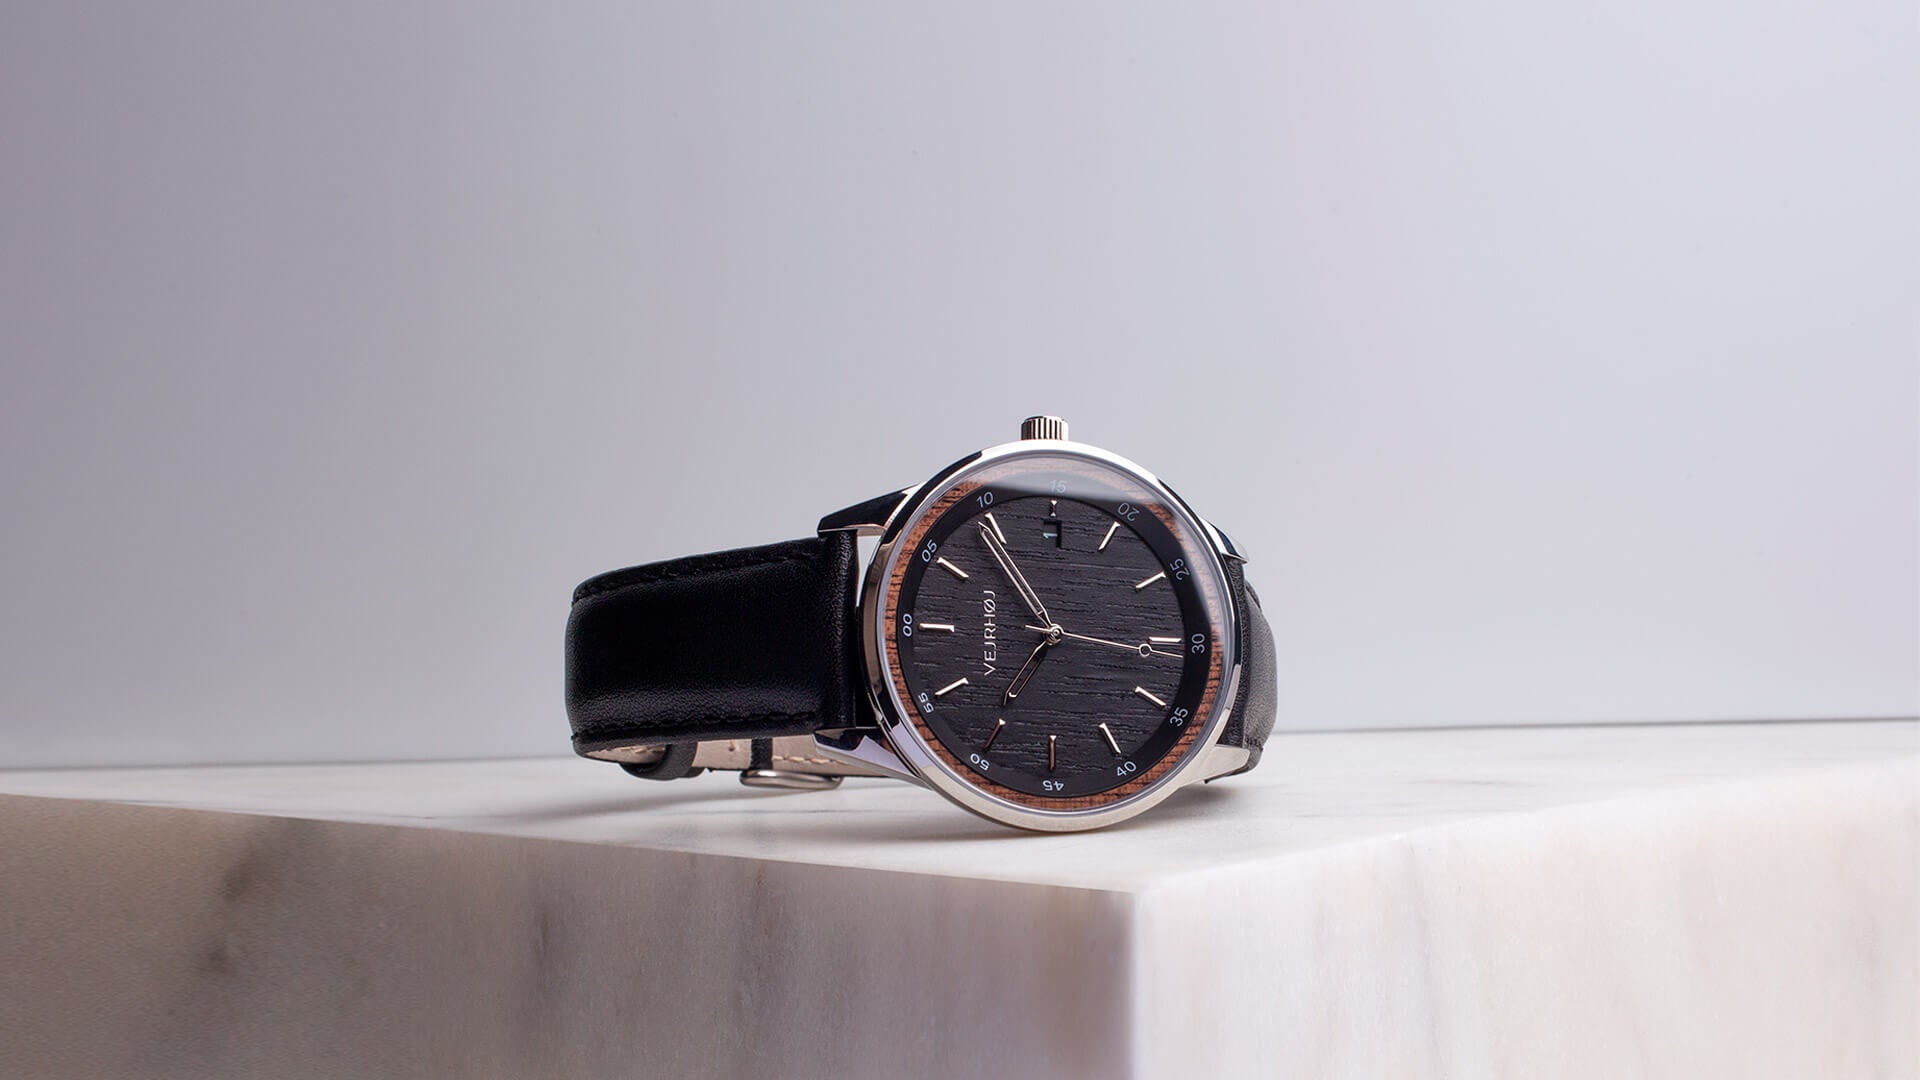 【新製品】腕時計ブランドVEJRHØJが、木材が主役の自動巻き式コレクション第2弾を発表